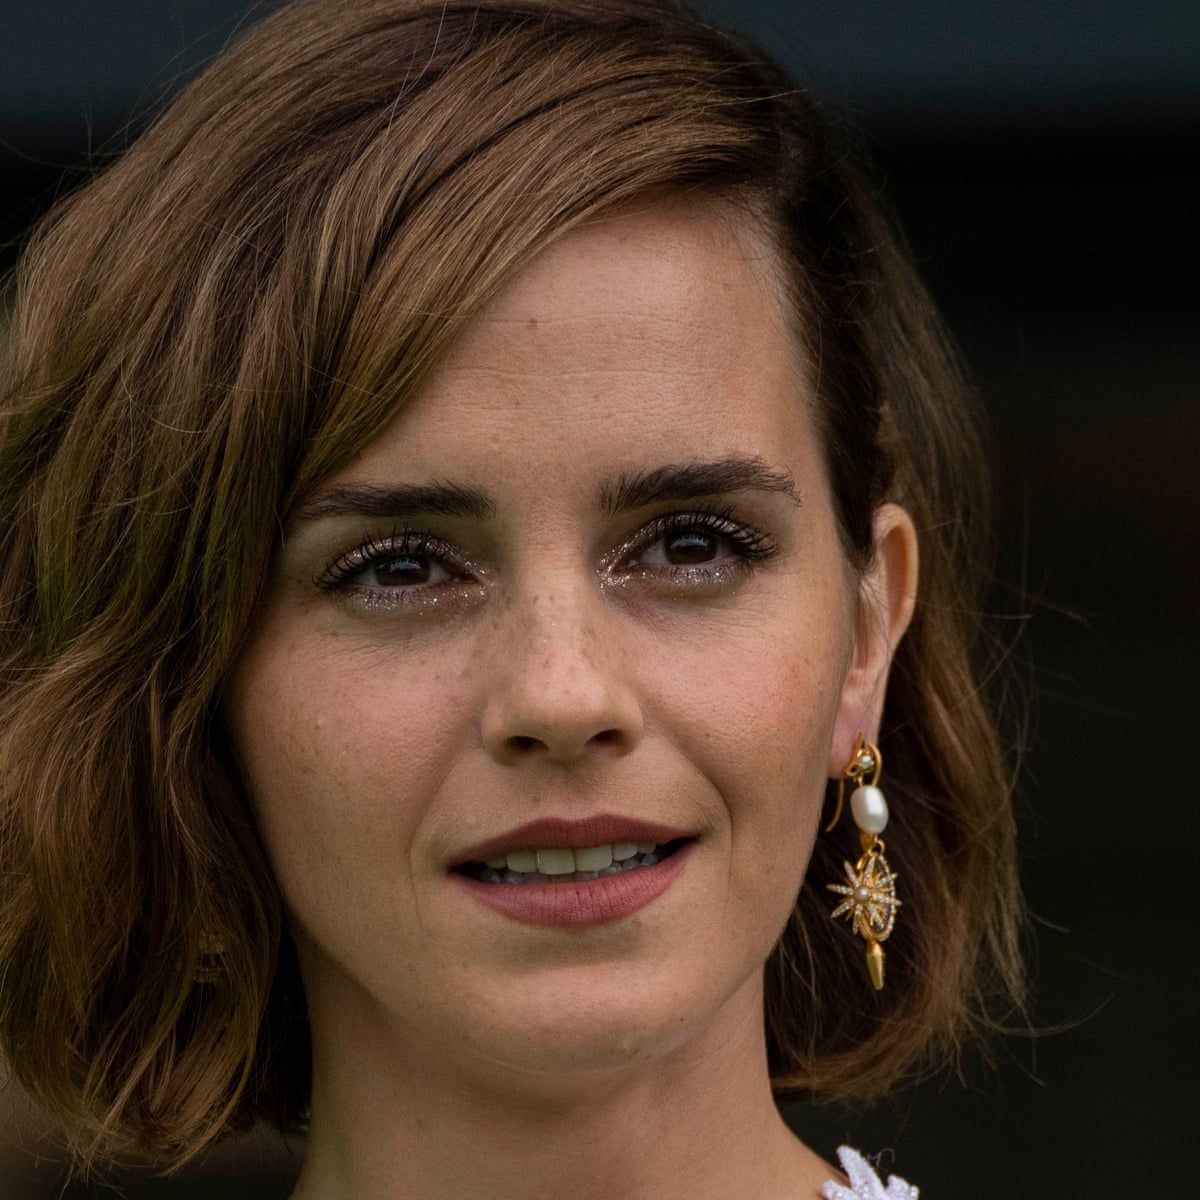 Falleció Emma Watson: La exitosa actriz sufrió un choque dónde perdió la vida